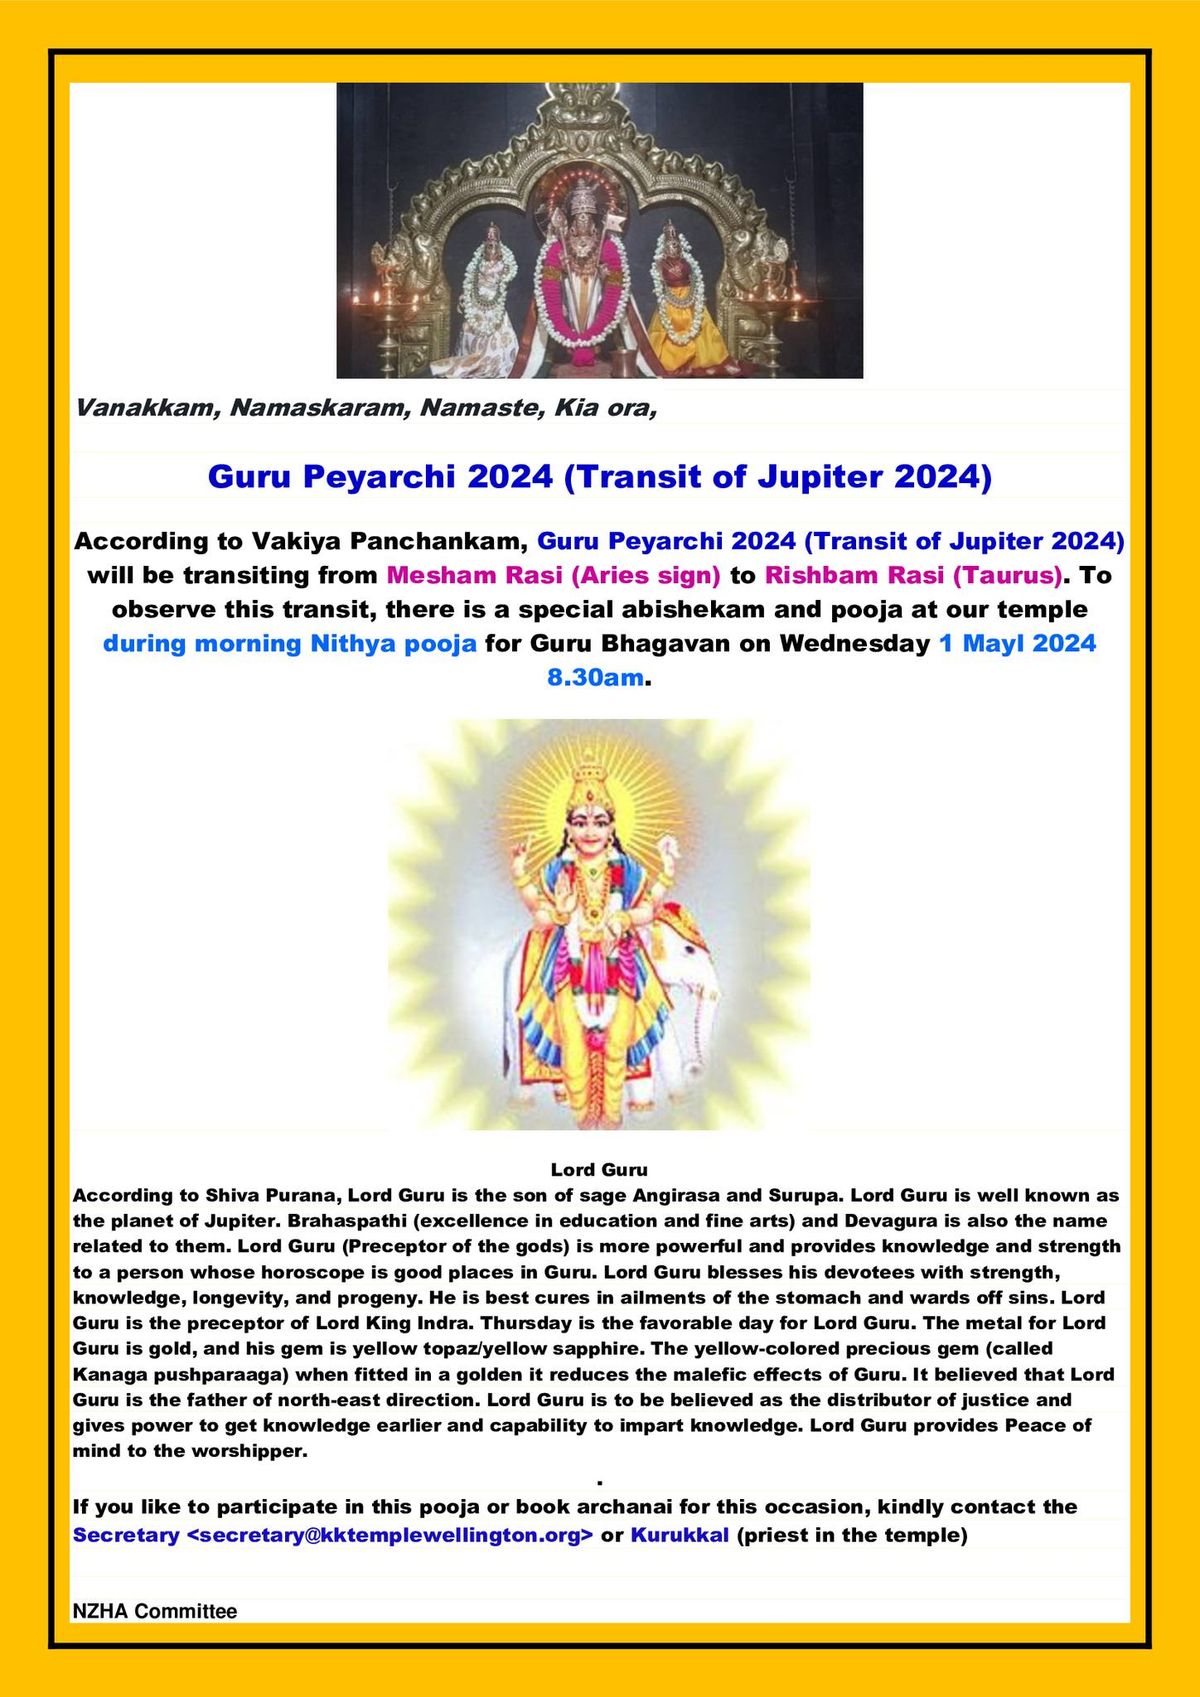 Guru Peyarchi 2024 (Transit of Jupiter 2024)-Wednesday 1 May 2024 8.30 am.